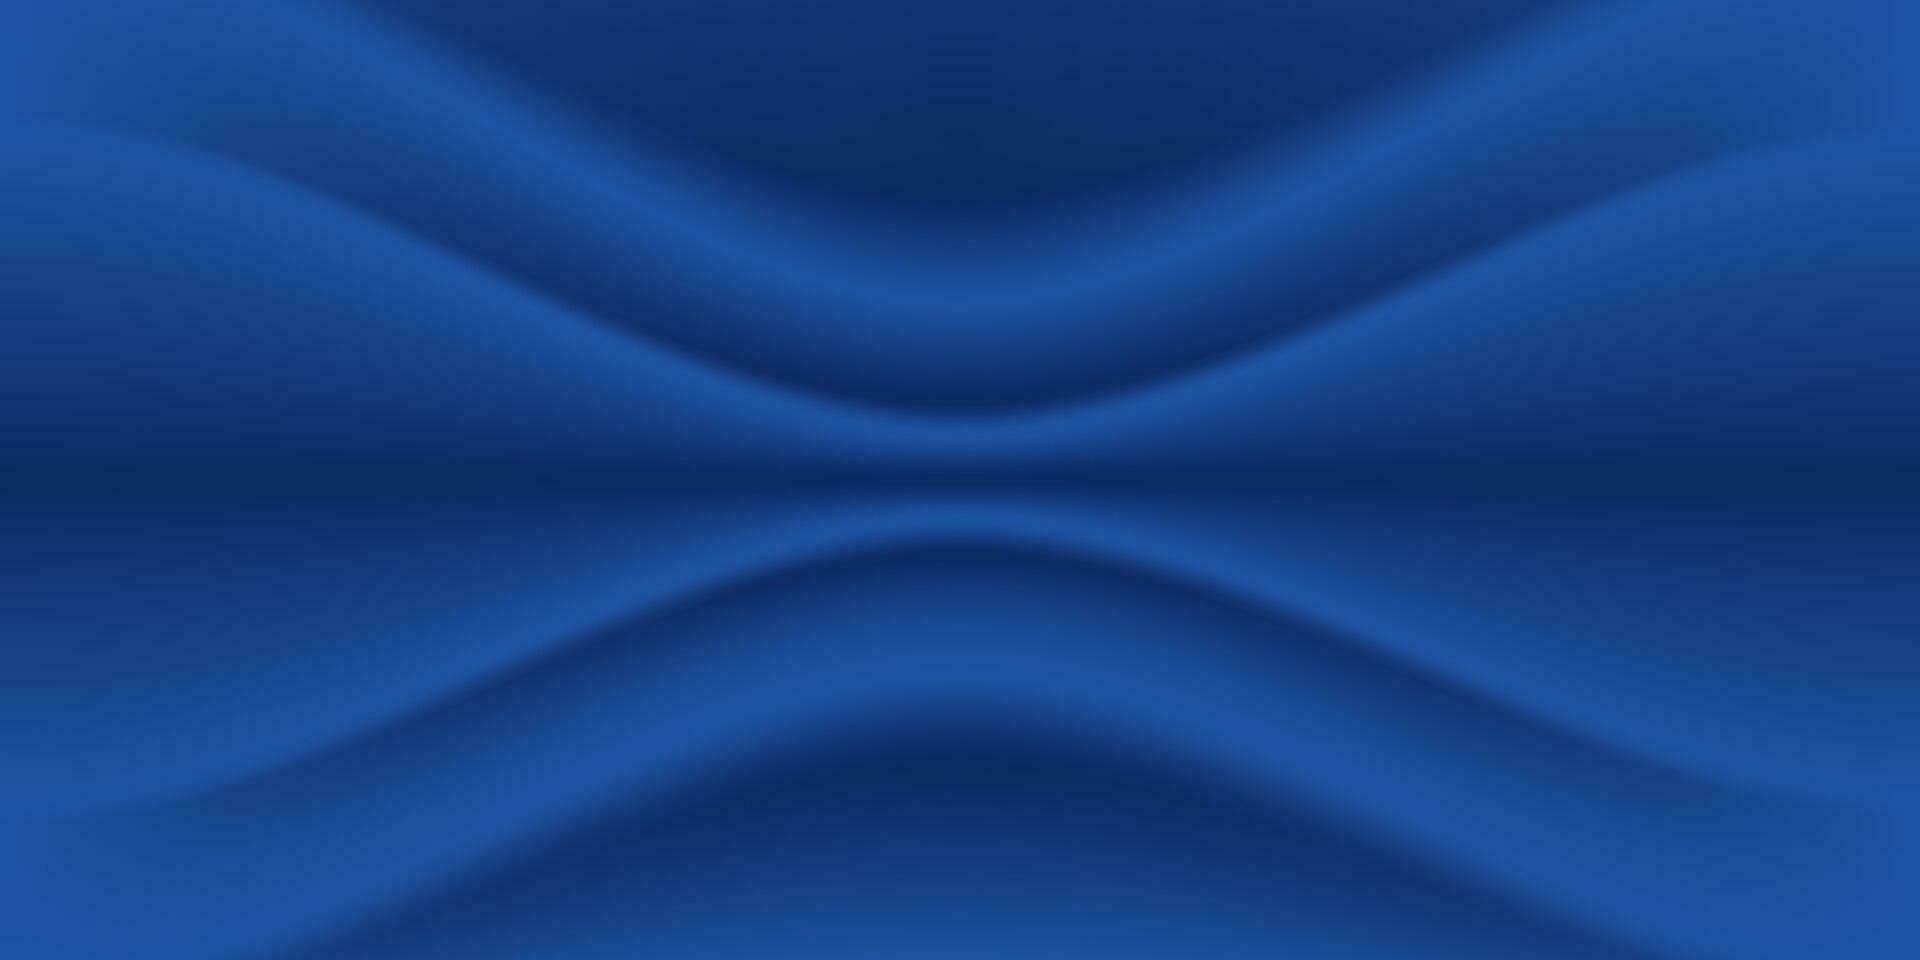 abstract premie donker blauw luxe kleding stof verfrommeld kleding structuur Golf schaduw zacht achtergrond met ruimte voor tekst. vector illustratie